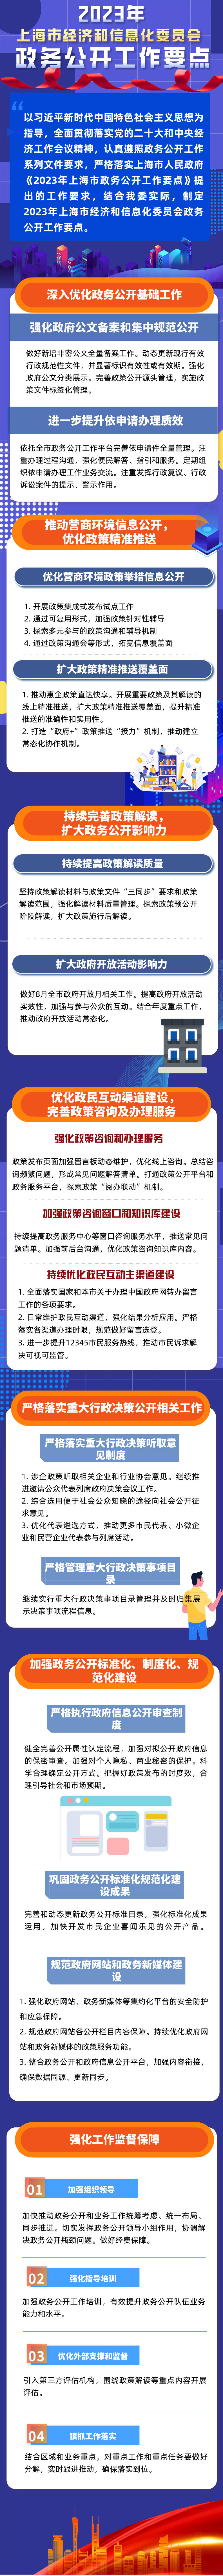 2023年上海市经济和信息化委员会政务公开要点图解.jpg